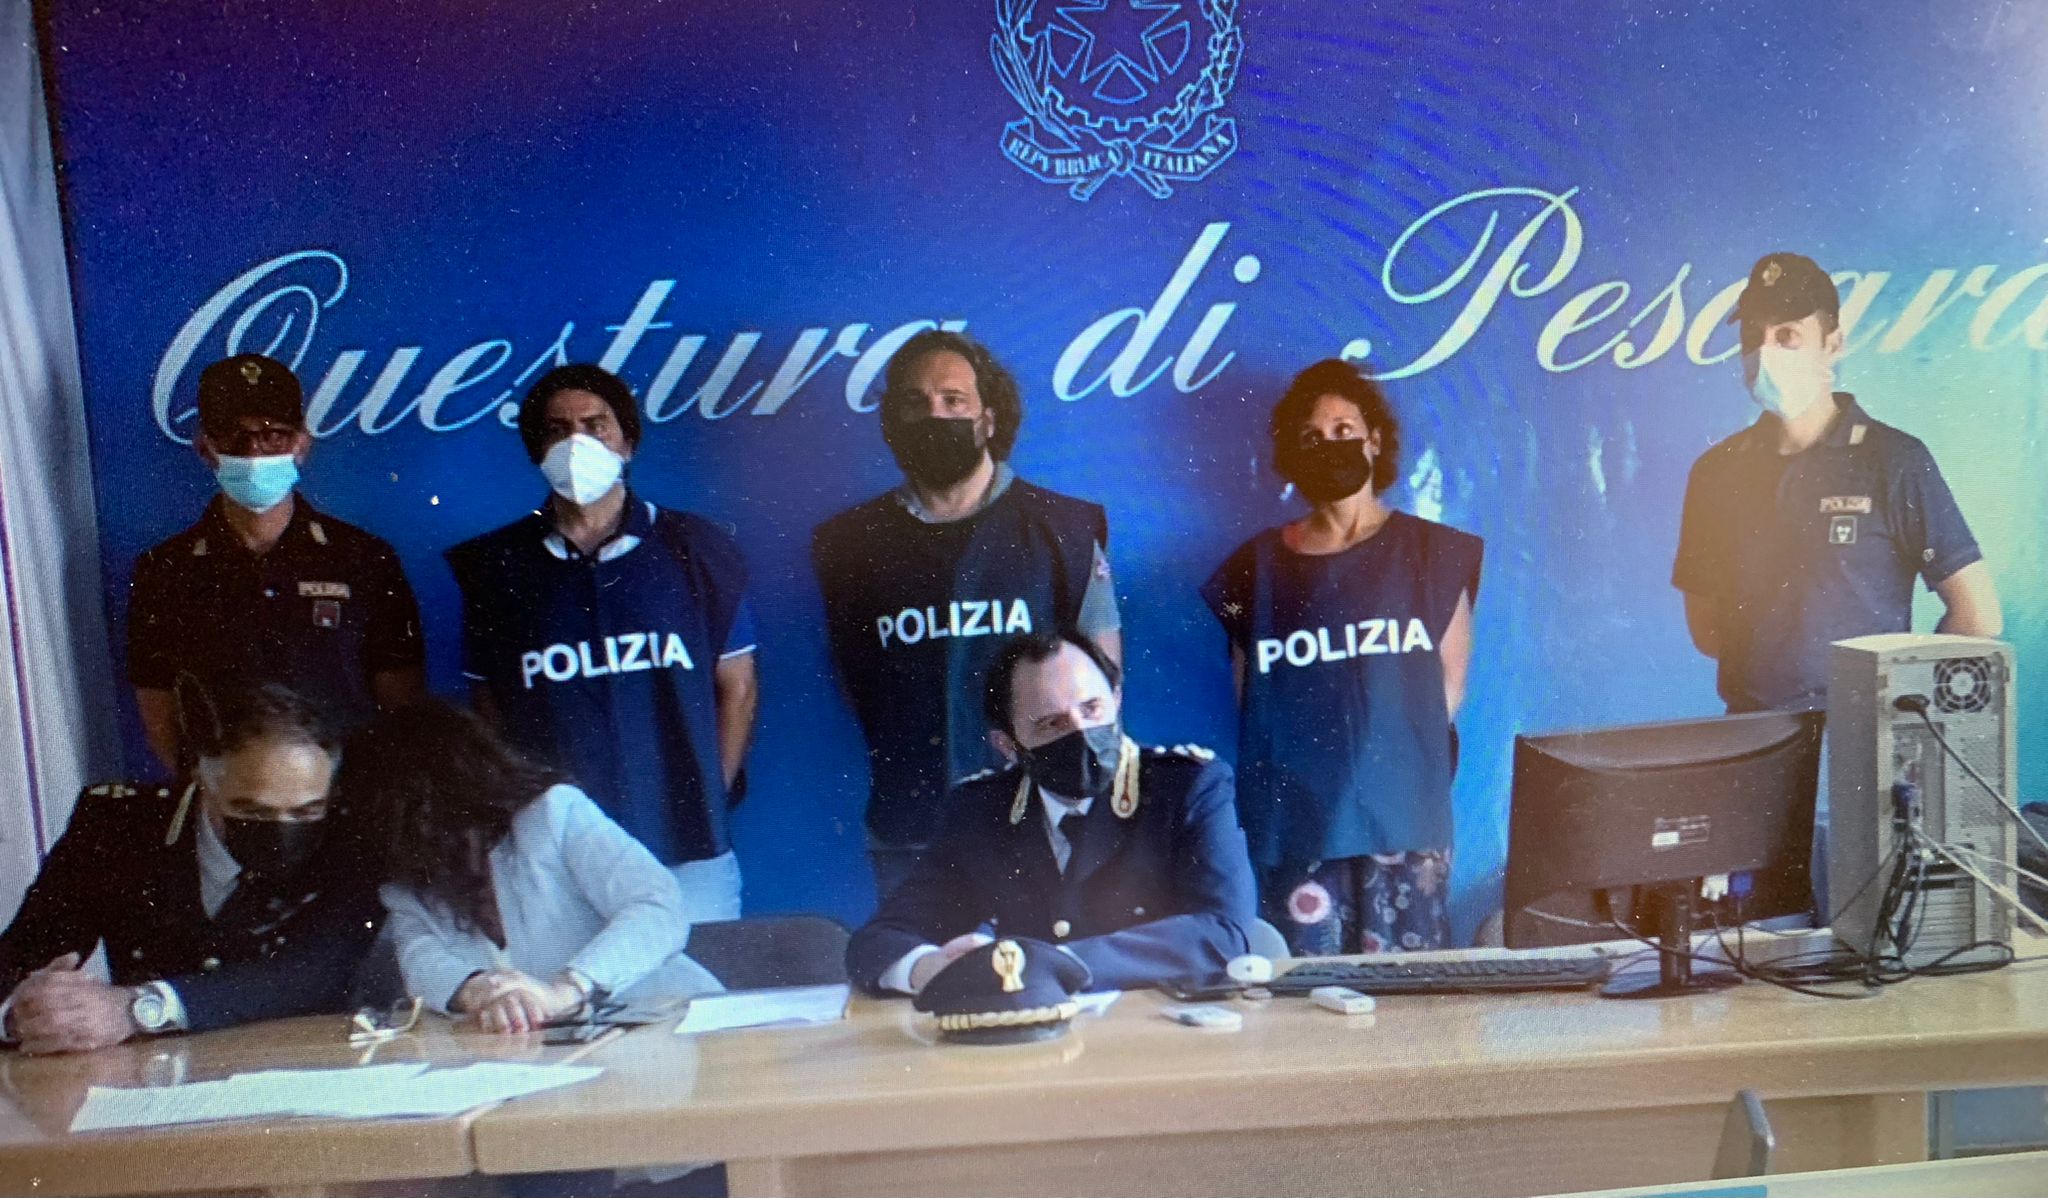 Pescara: sequestro di persona e sfruttamento della prostituzione, 21 enne caricata su un furgone. Due cittadini bulgari arrestati a Gorizia